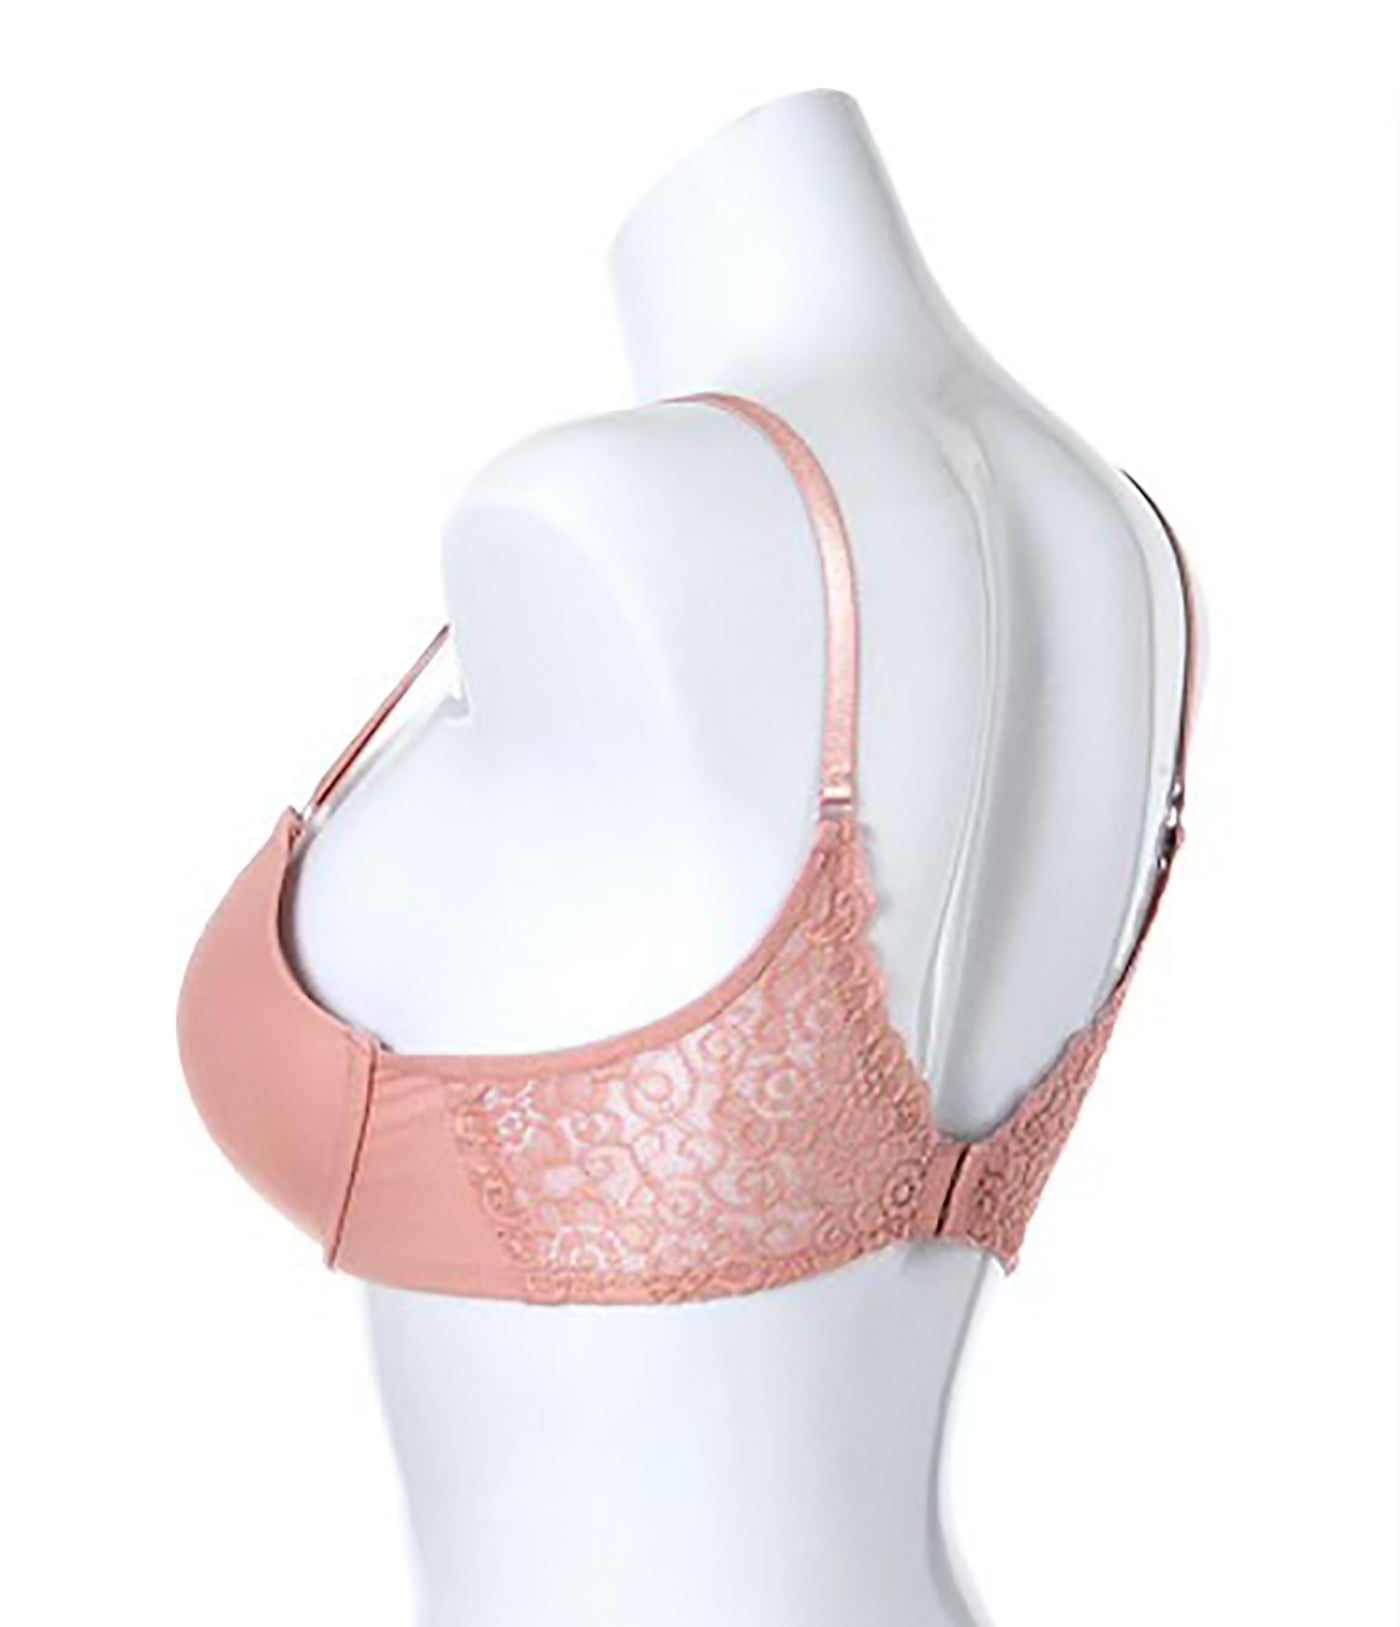 royal.intimates - Censored double padded push-up bra Size: 38C